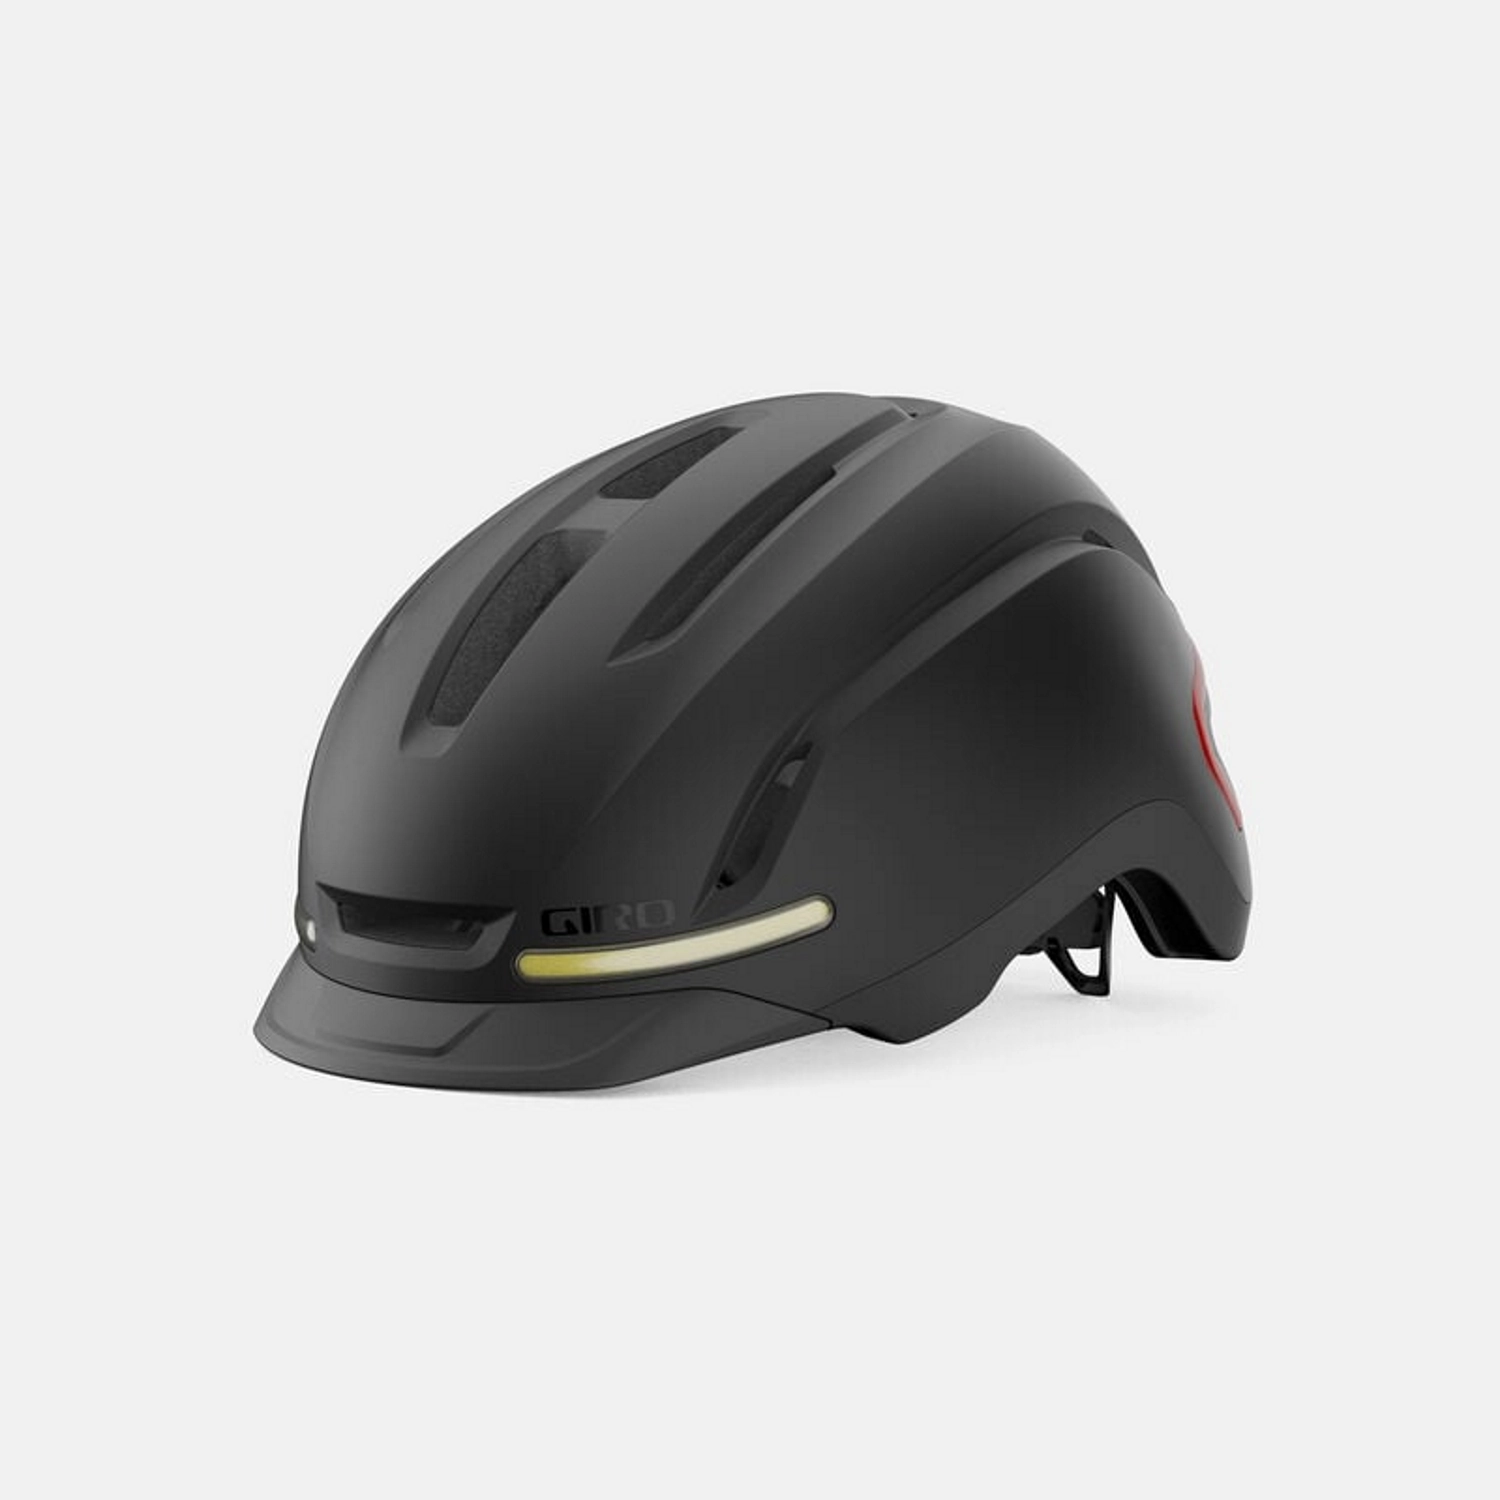 Nowoczesny kask rowerowy miejski Giro w kolorze czarnym z aerodynamicznym kształtem i wentylacją